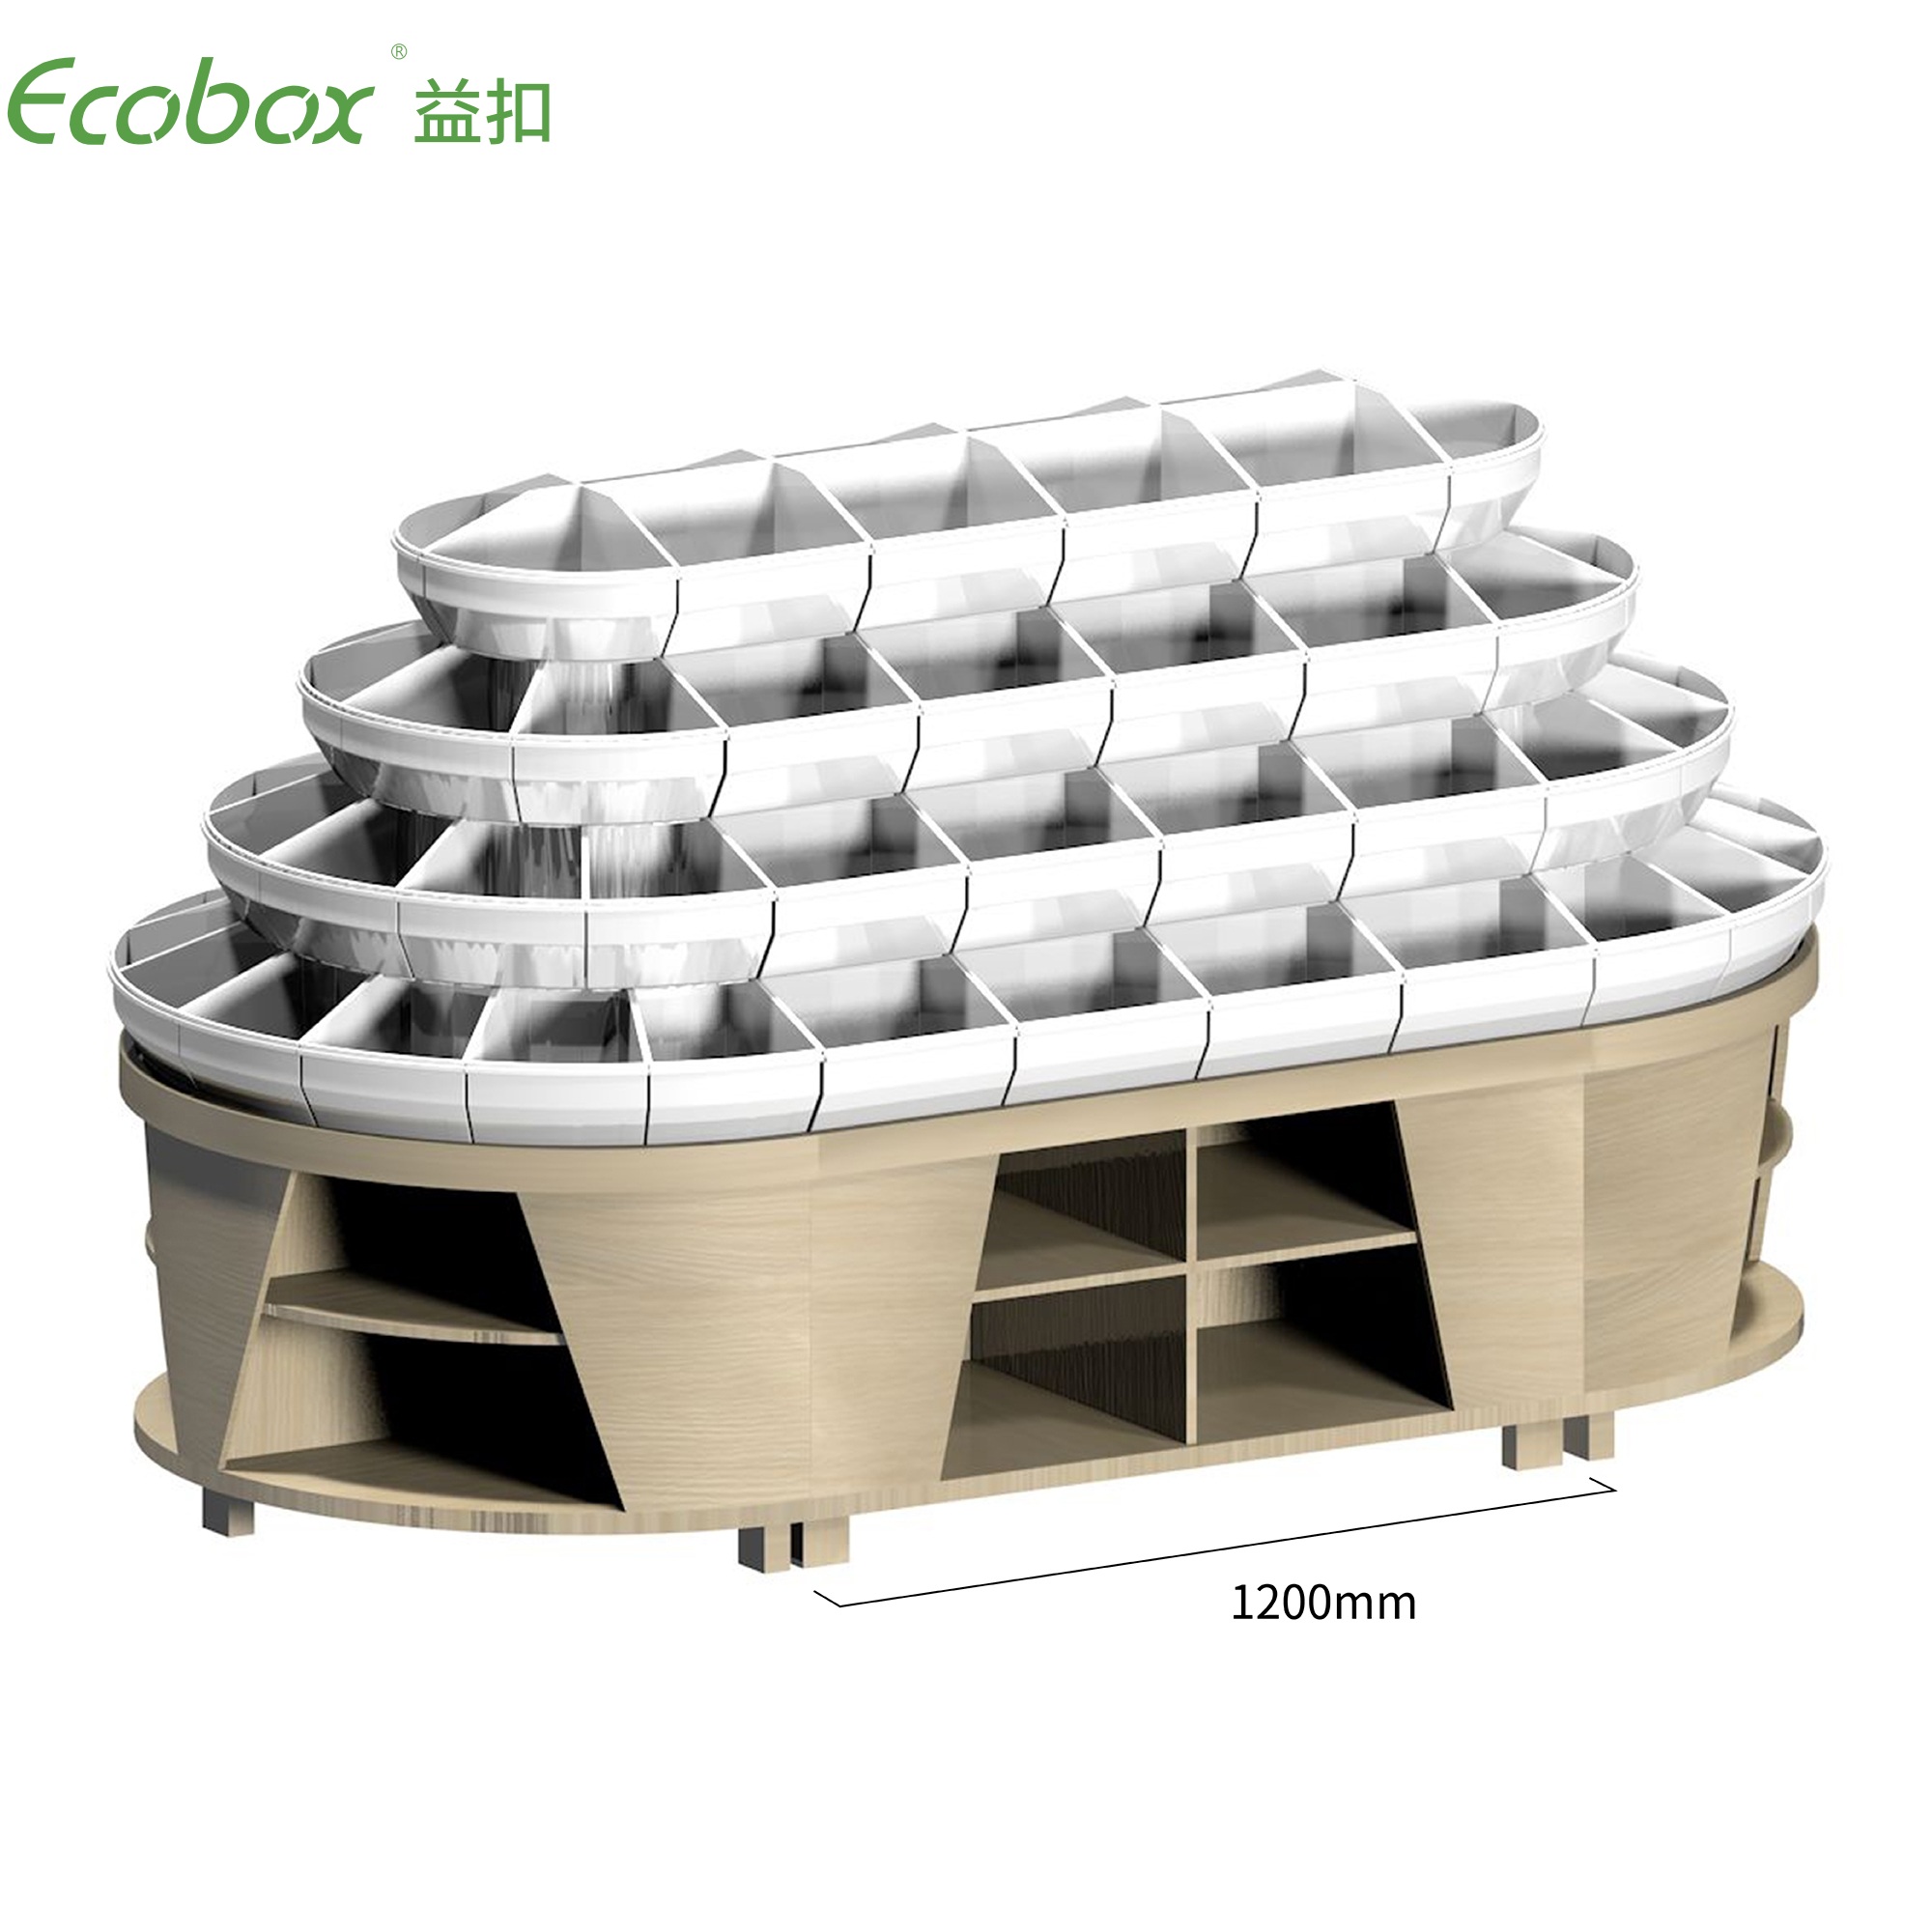 Exhibidores de alimentos a granel para supermercado Ecobox G010 con contenedores de supermercado Ecobox